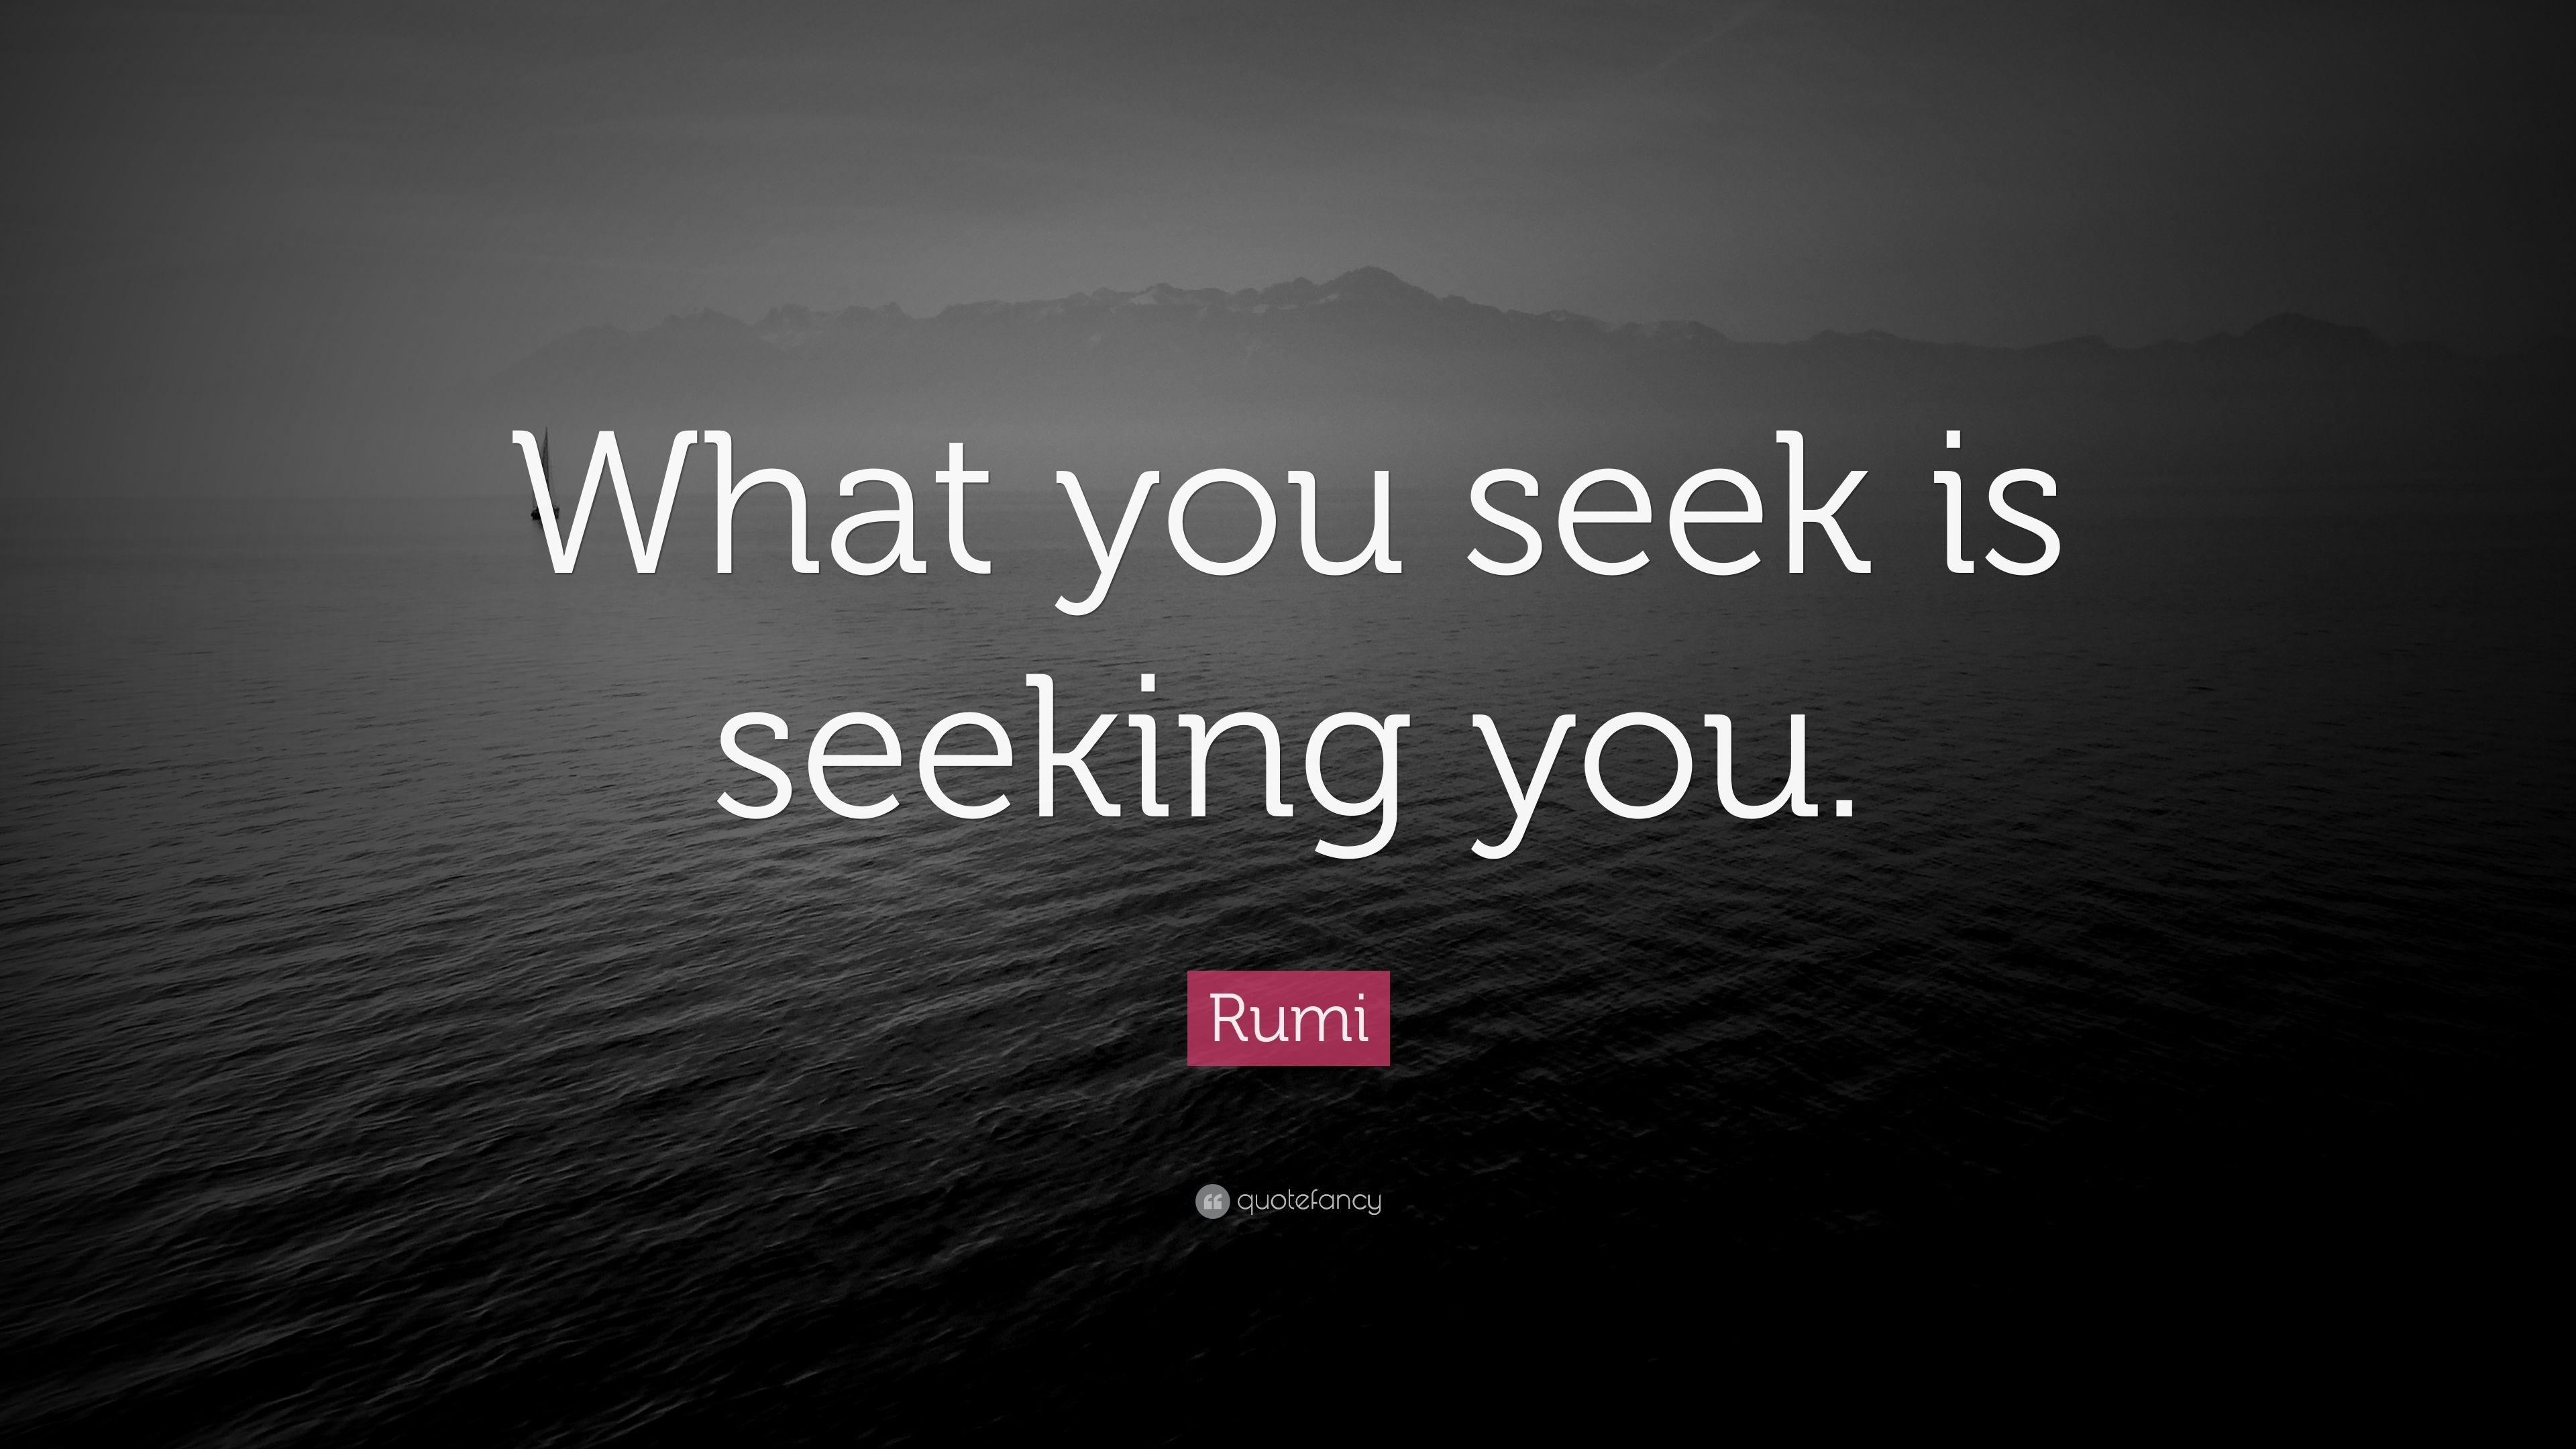 Rumi Quote: “What you seek is seeking you.” (23 wallpaper)